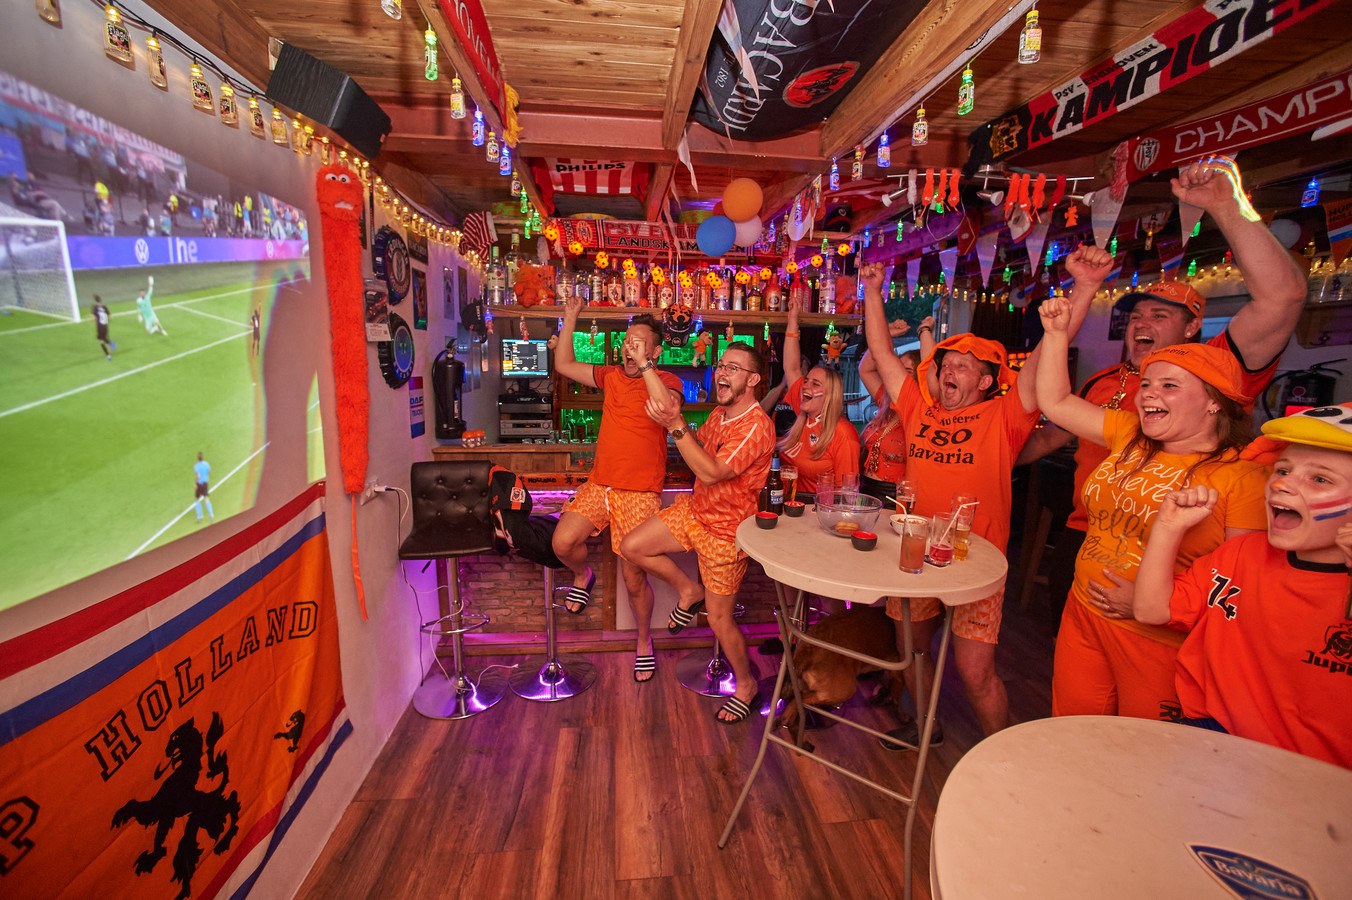 Oranjegekte in Geffen
De families Looimans en van Lith (buren) volgen de voetbalwedstrijd Nederland- Oostenrijk in de oranje versierde schuur aan de Heegterstraat te Geffen. Op de foto tijdens de 2-0.